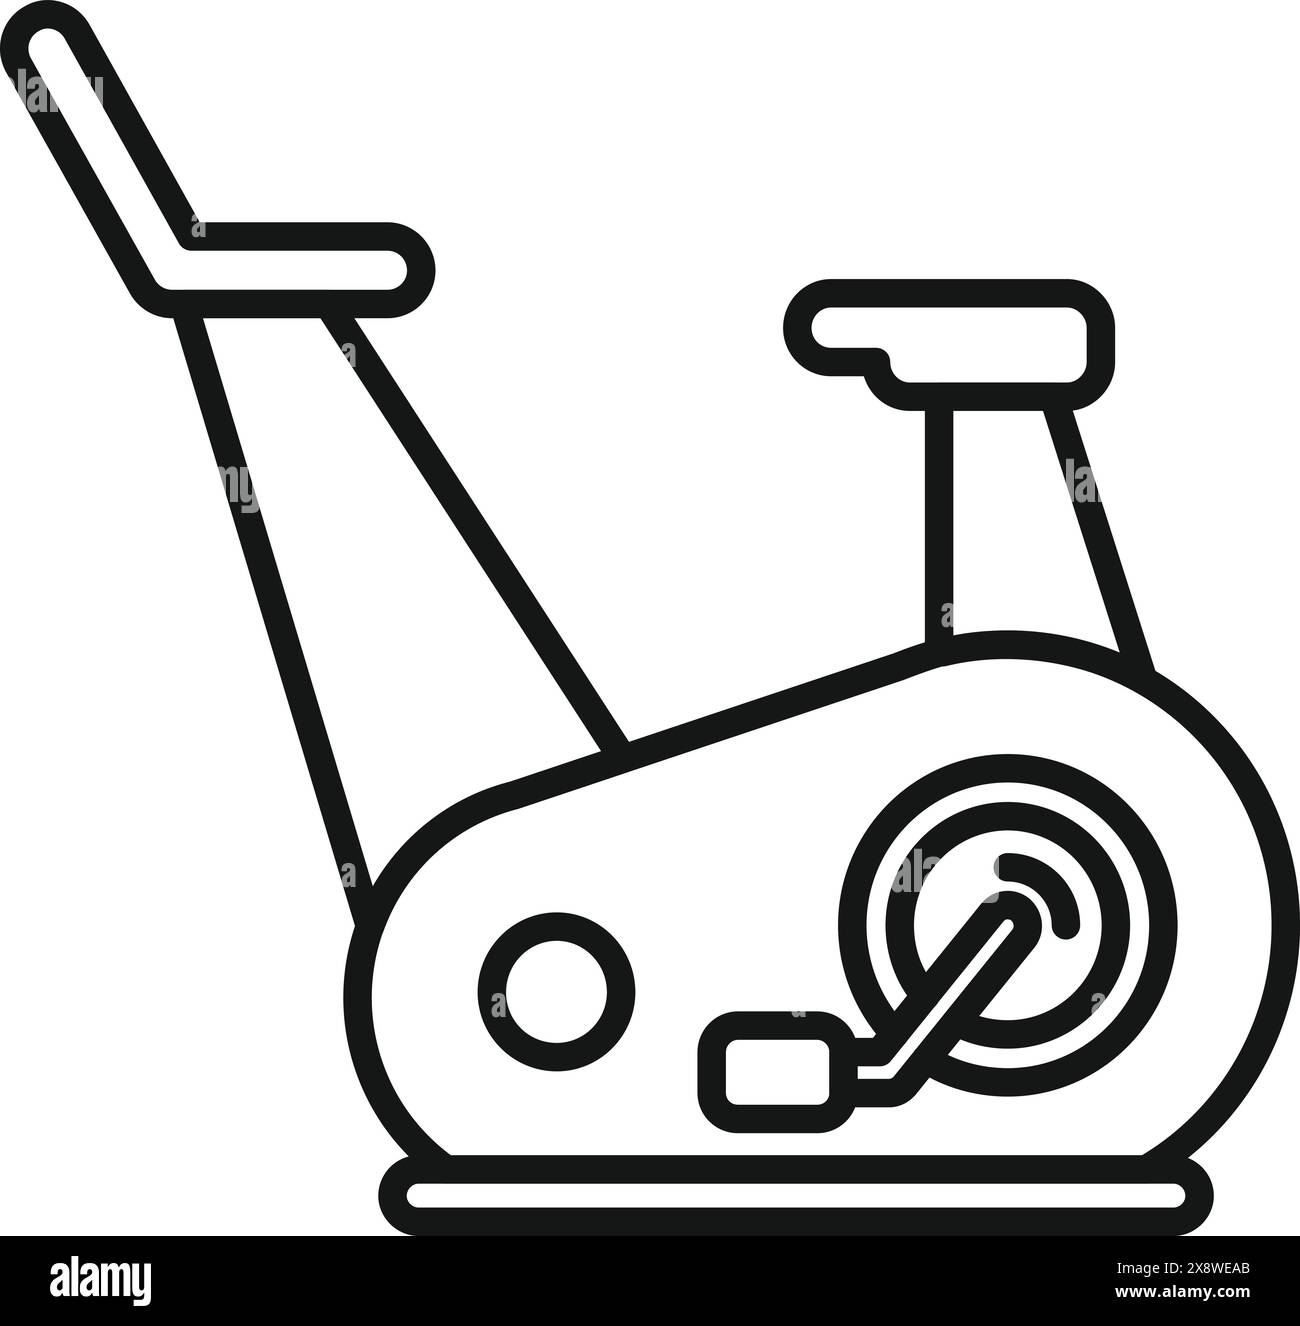 Black and white line art illustration of a modern stationary exercise bike Stock Vector